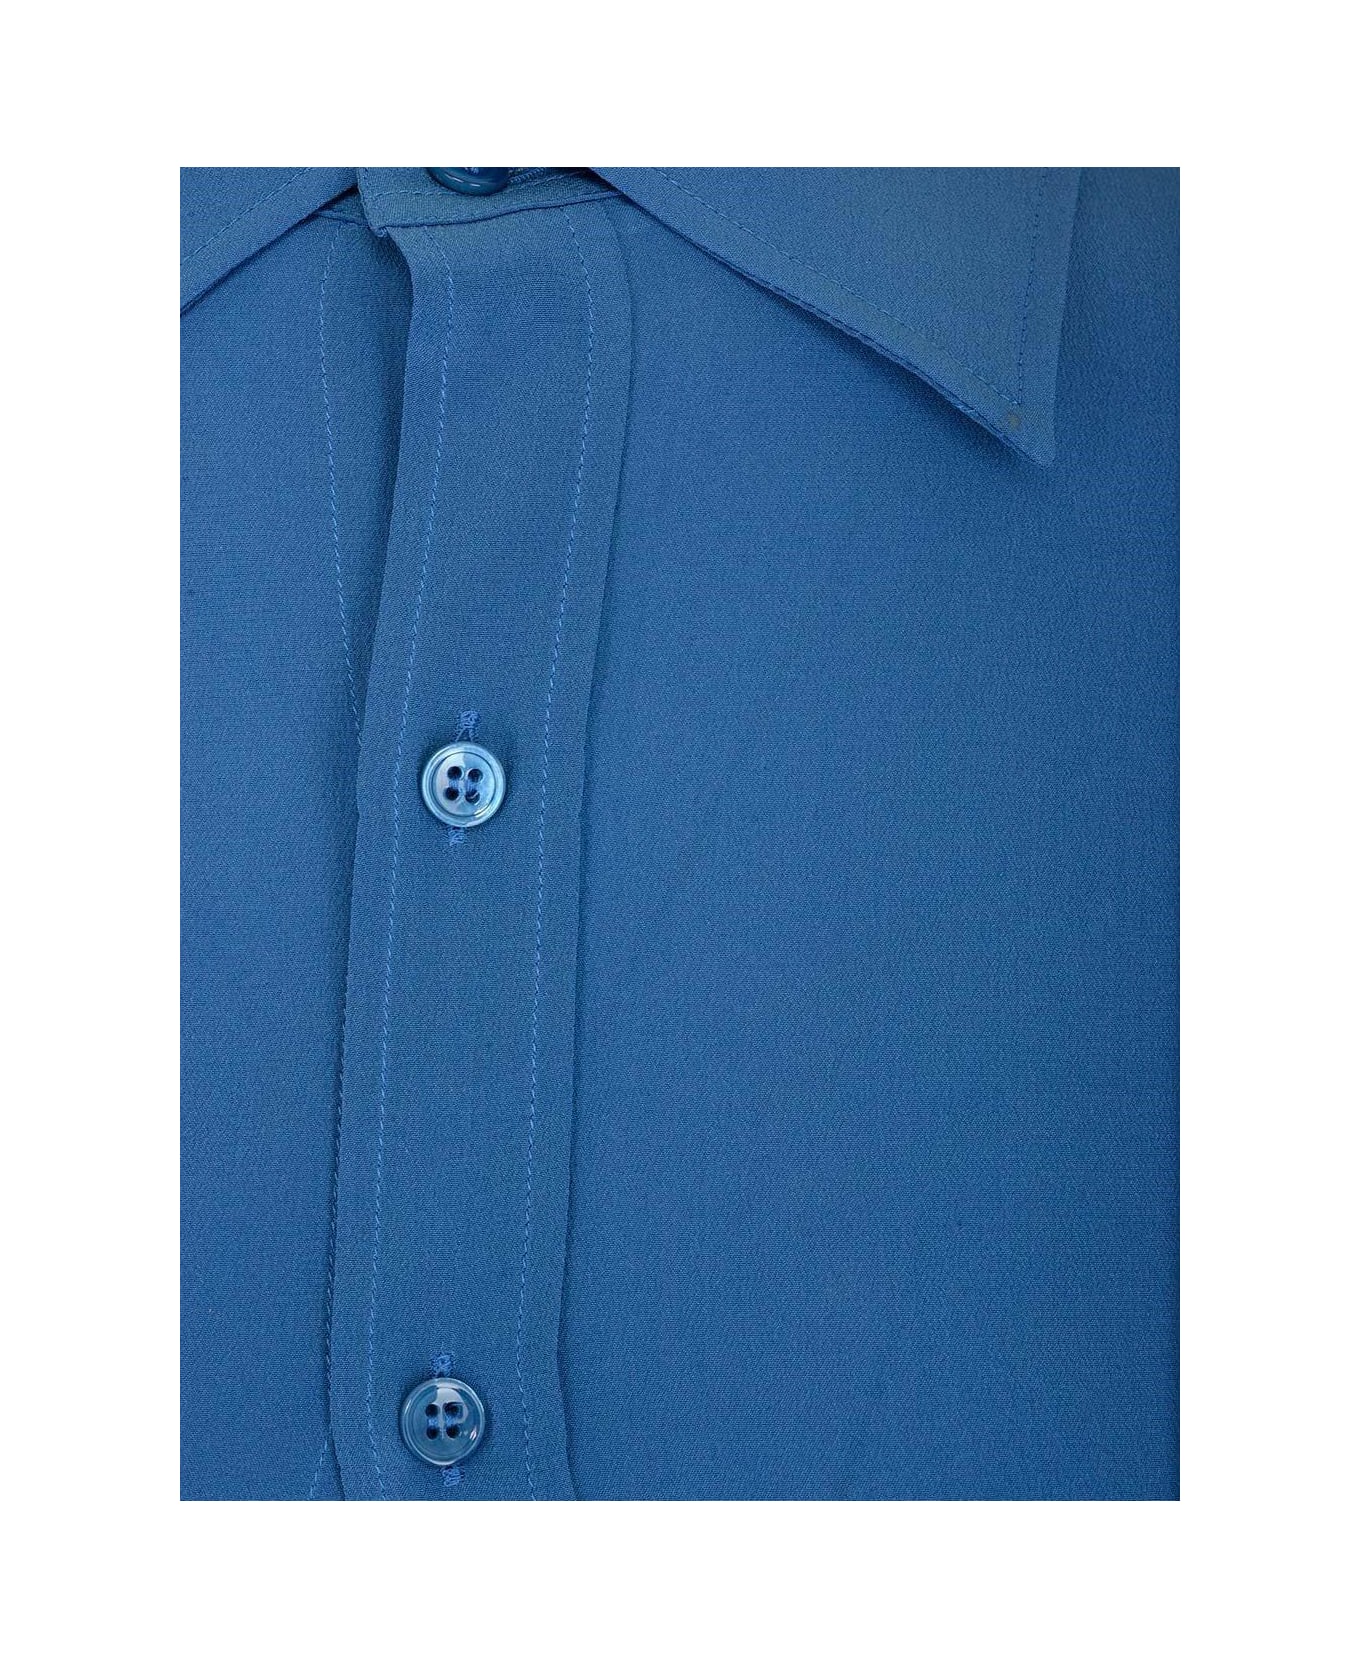 Saint Laurent Crepe De Chine Fitted Shirt - Deep blue シャツ